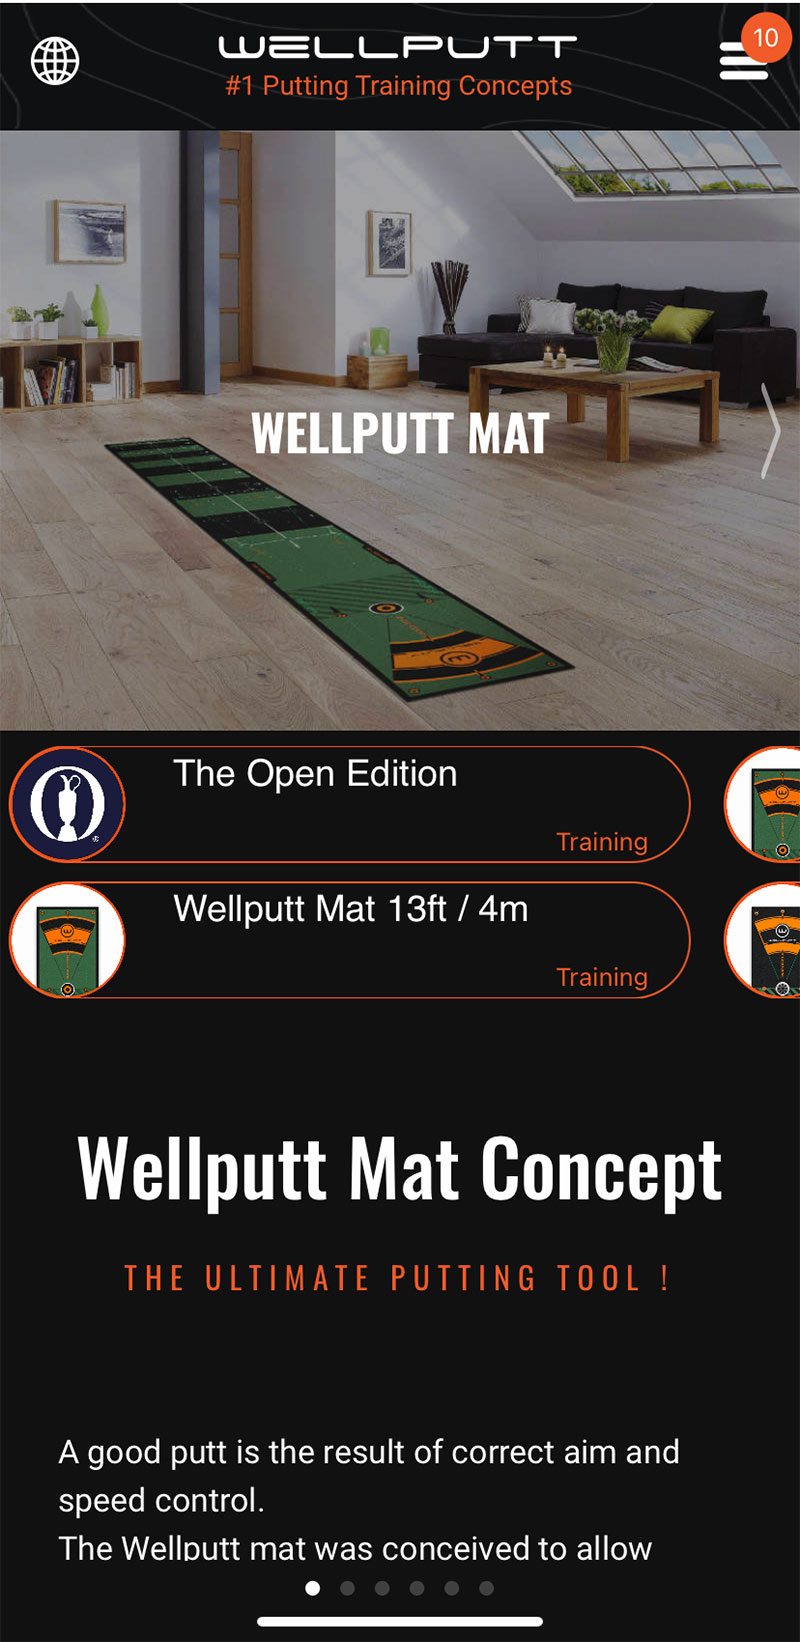 プロも使うパターマット「WELLPUTT(ウェルパット)マット」を詳しくレビューするよ - ゴルフ好き女子の日常